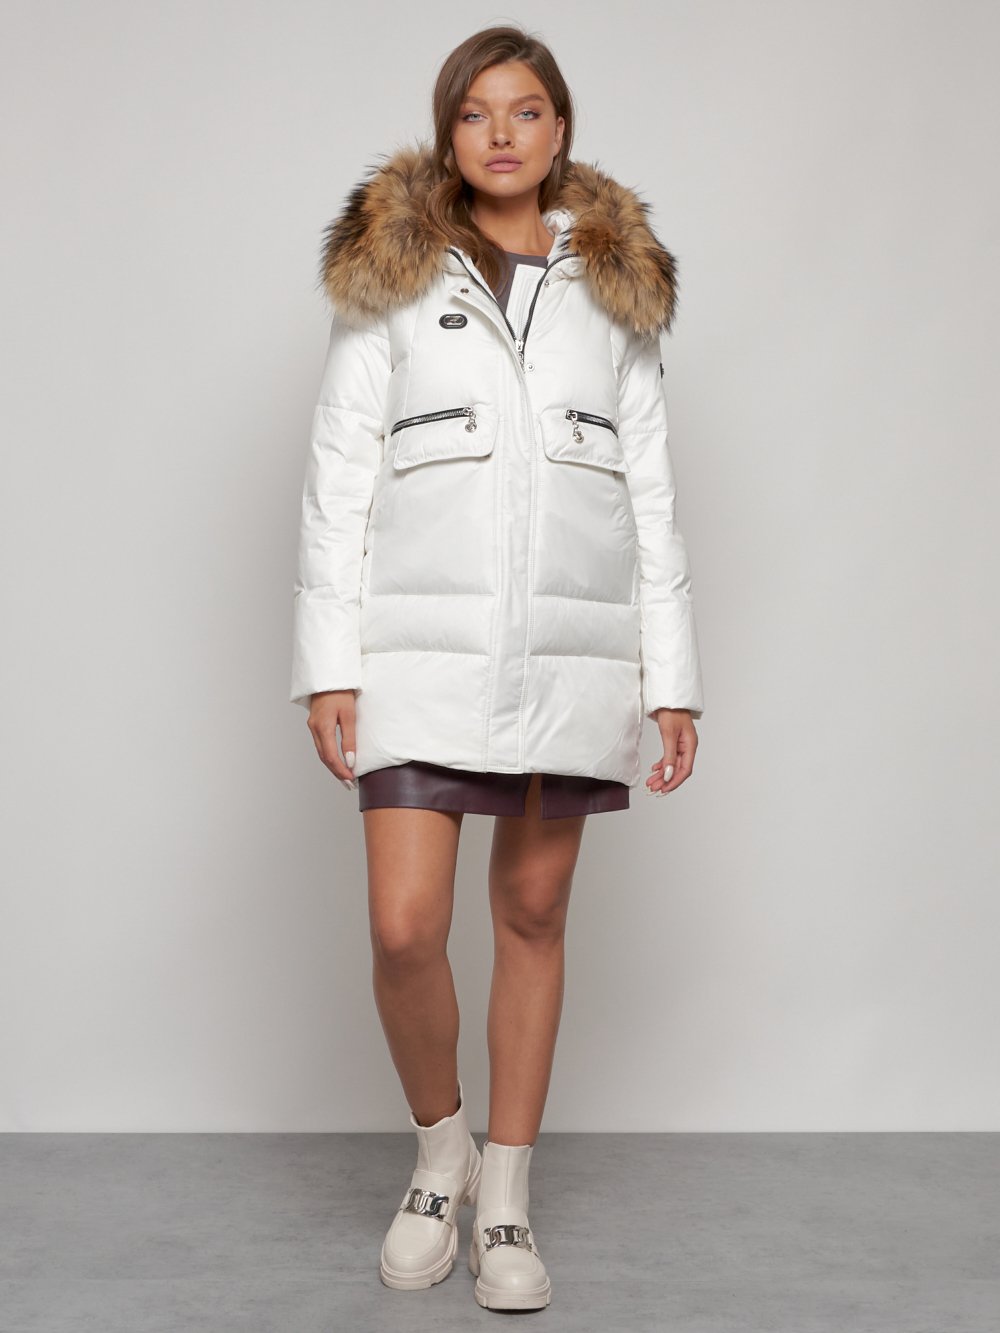 Купить куртку женскую зимнюю оптом от производителя недорого в Москве 132298Bl